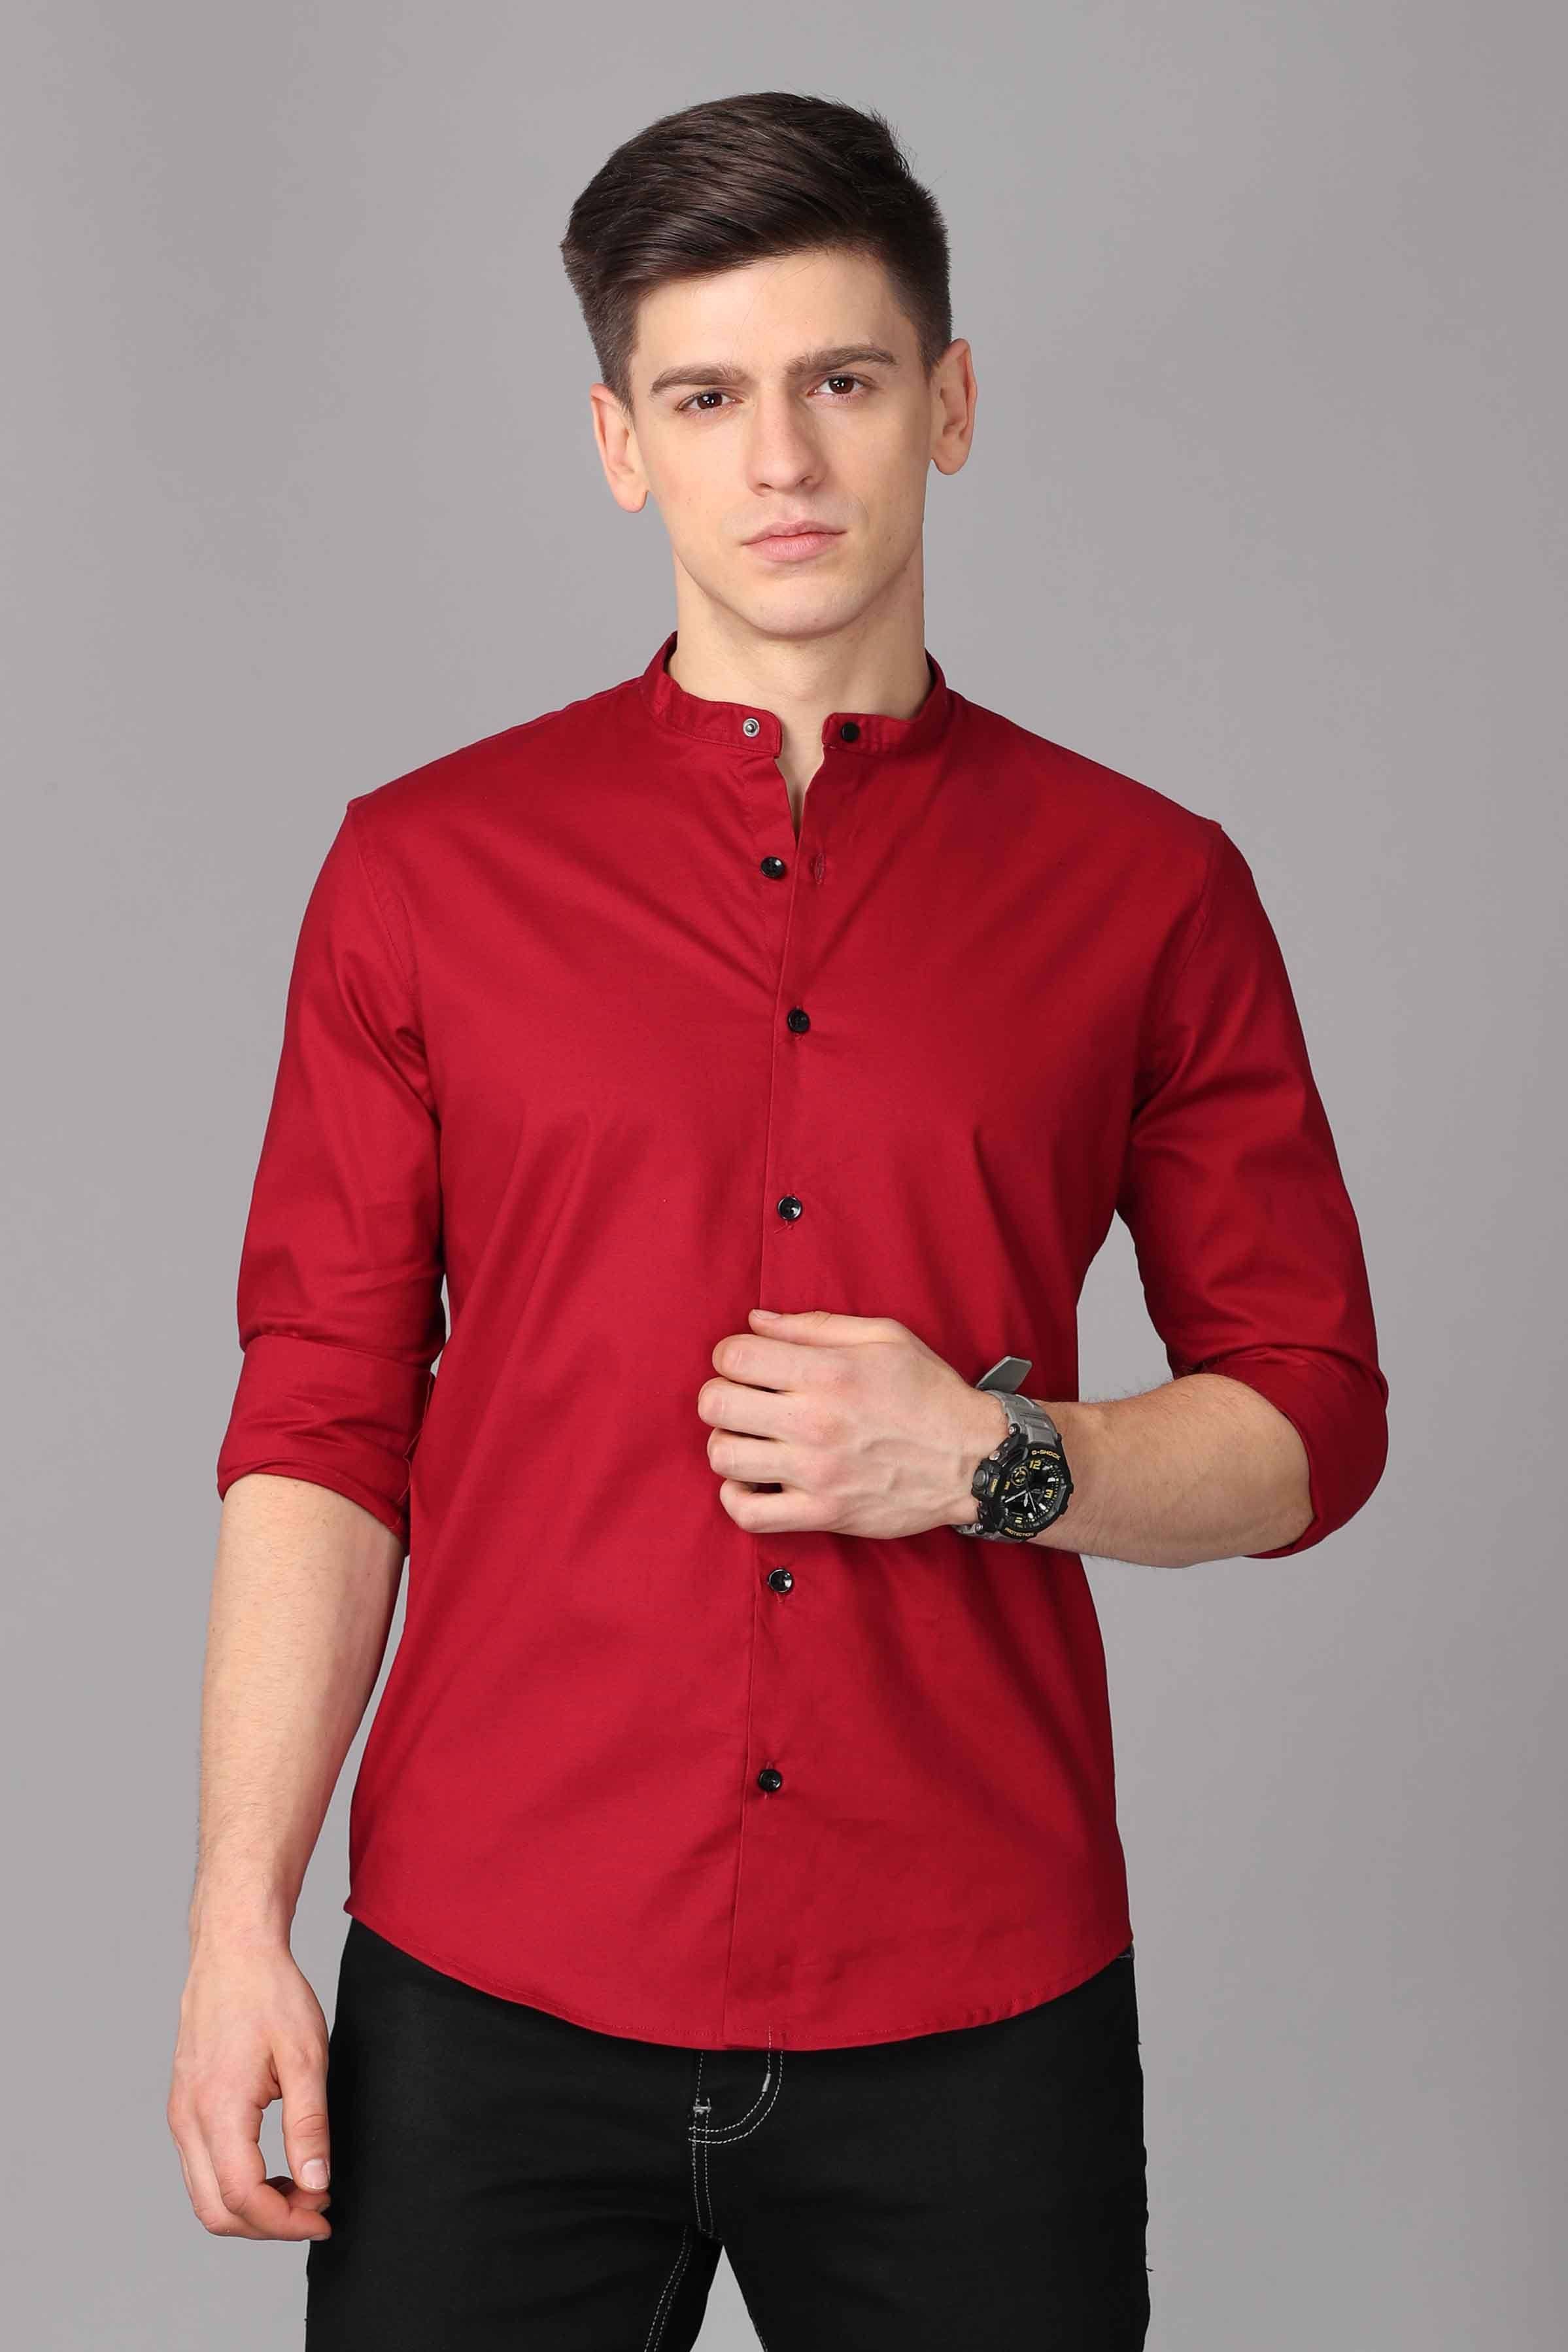 Maroon Long Sleeve Band Collar Shirt Shirts KEF S 